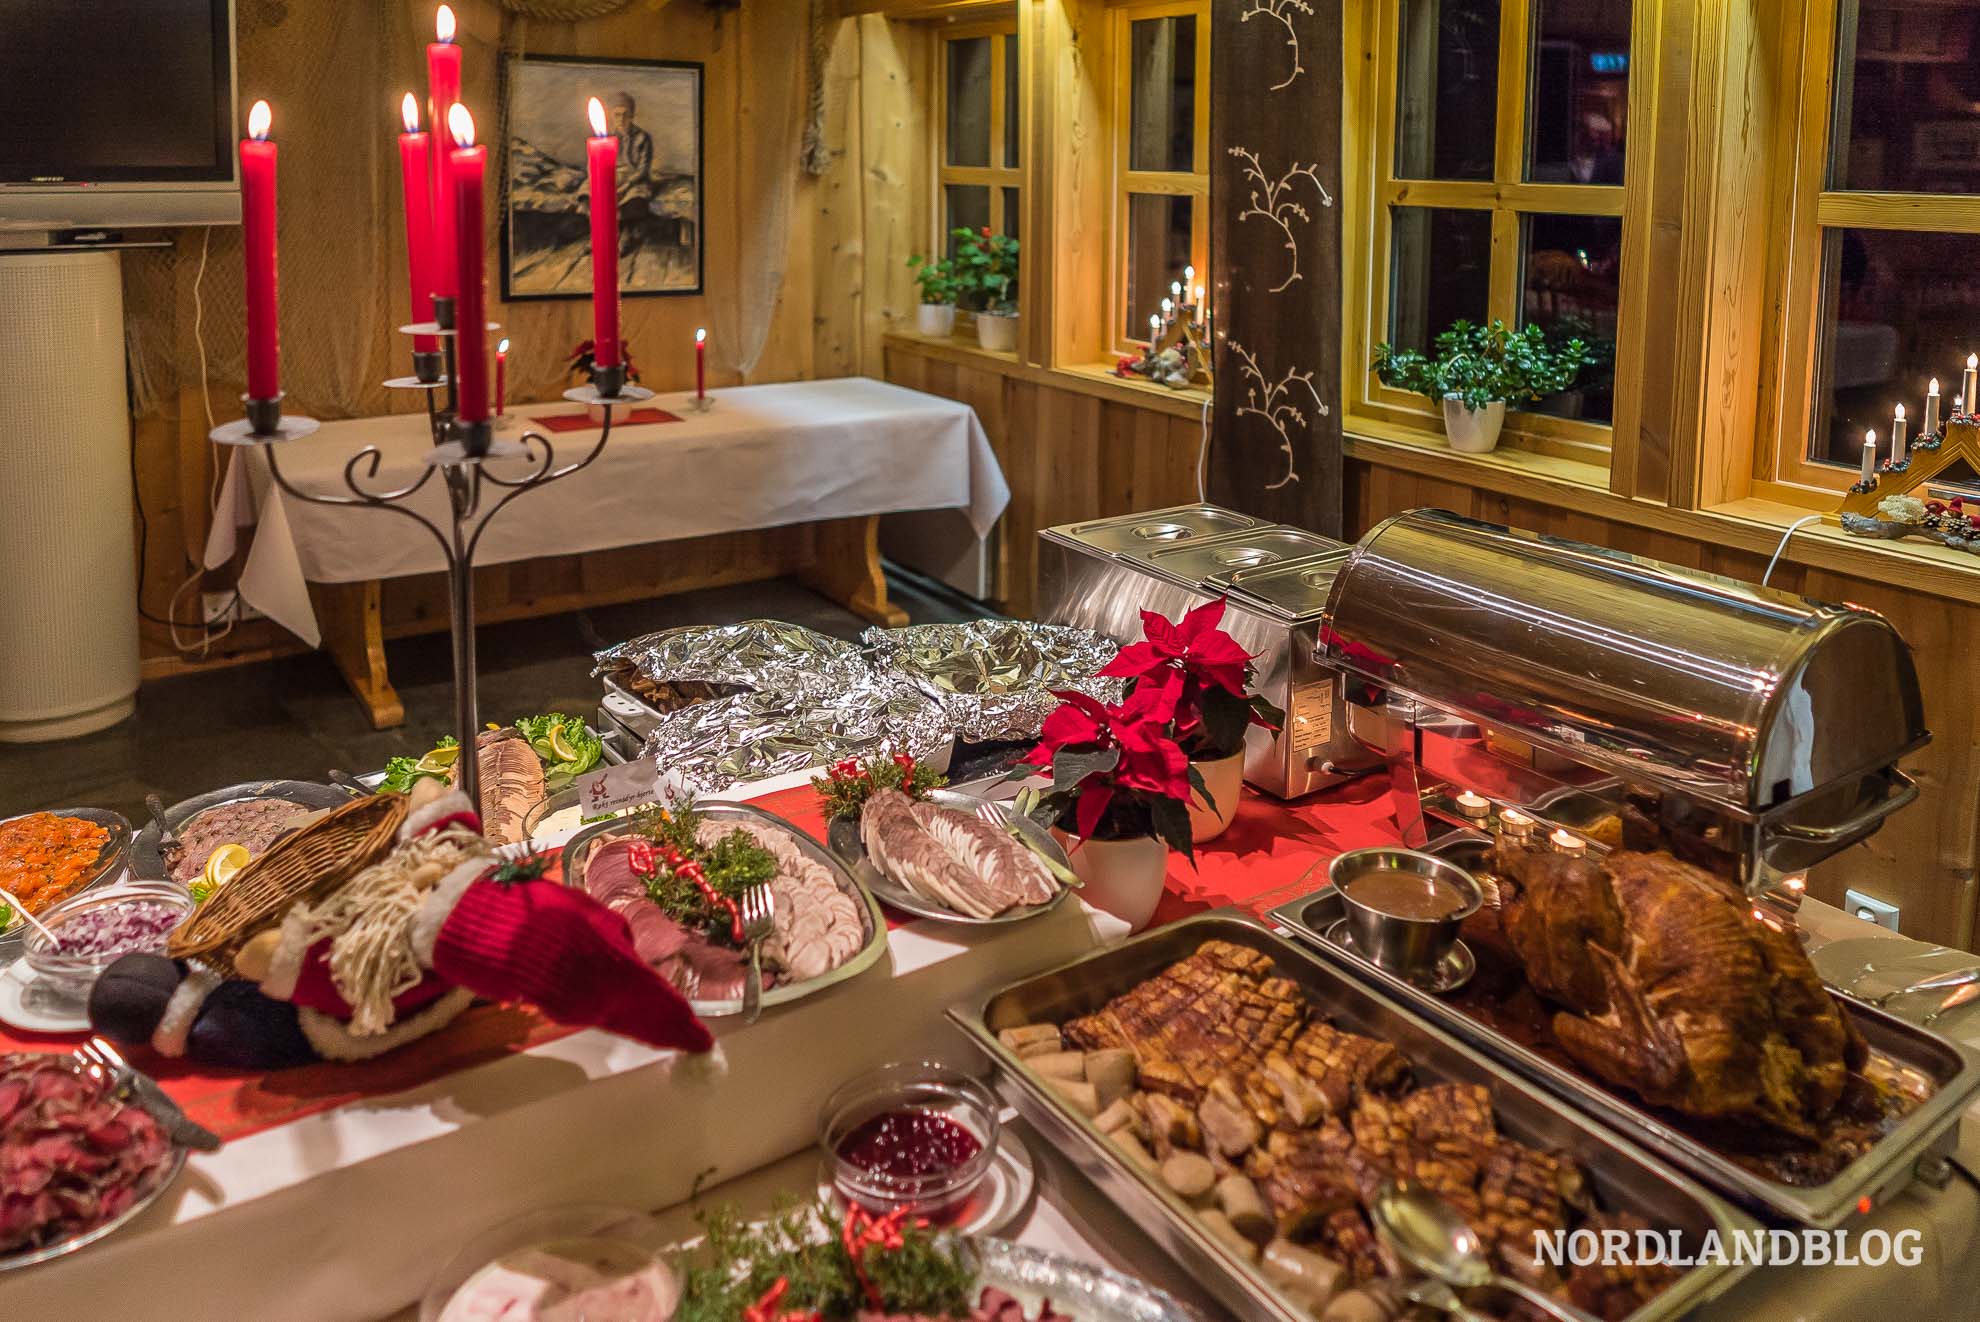 Leckereien auf dem Weihnachtsbuffet zu Weihnachten in Norwegen